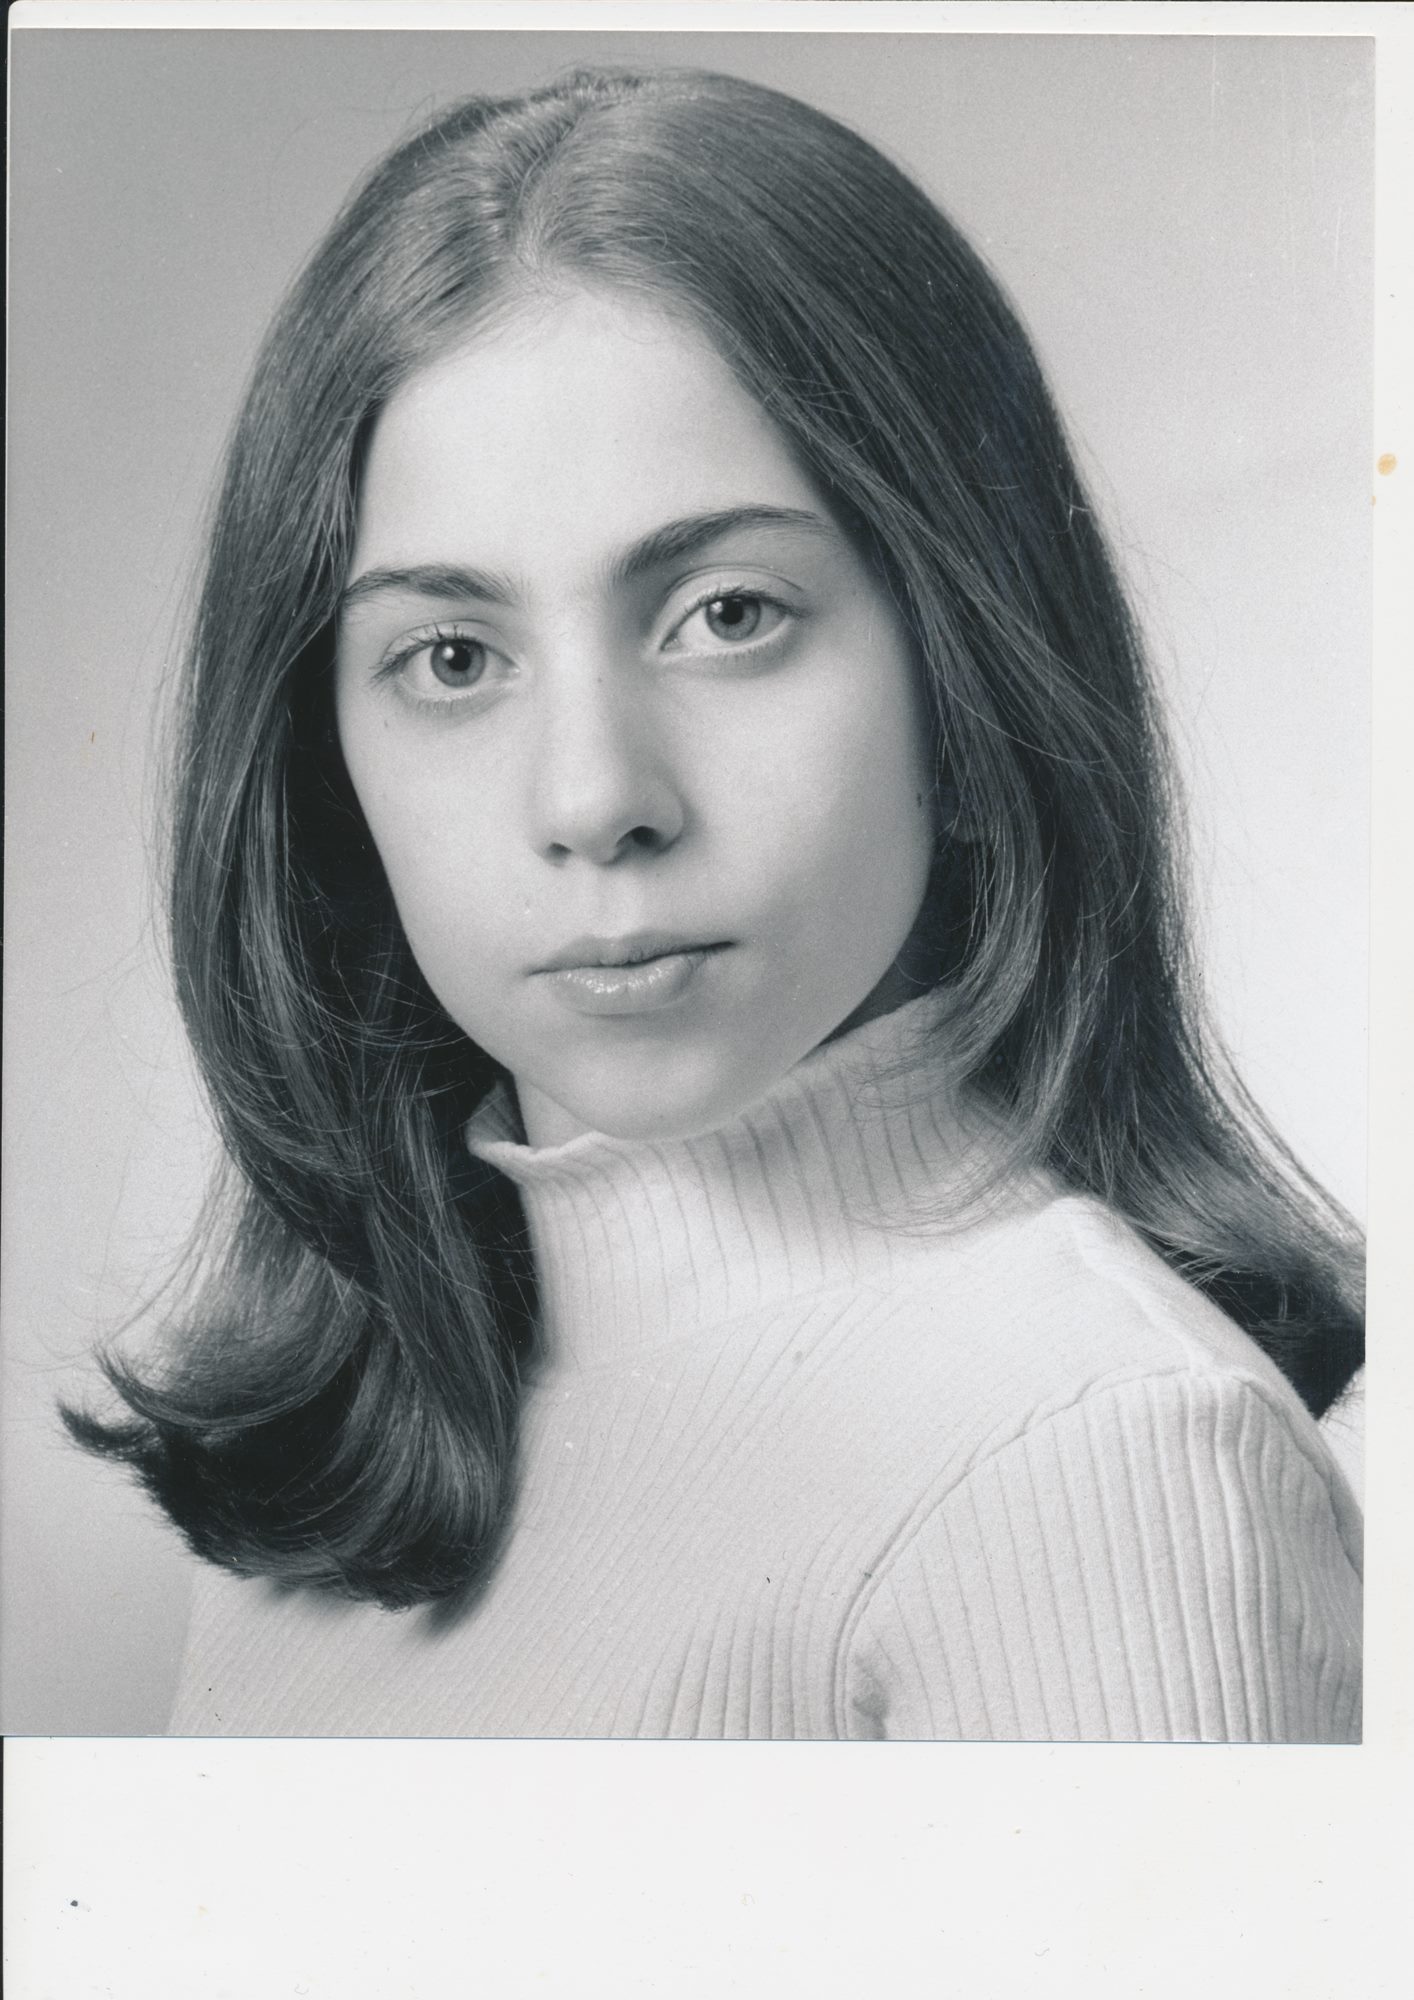 Real or Fake Pic of a young Gaga? - Gaga Thoughts - Gaga Daily